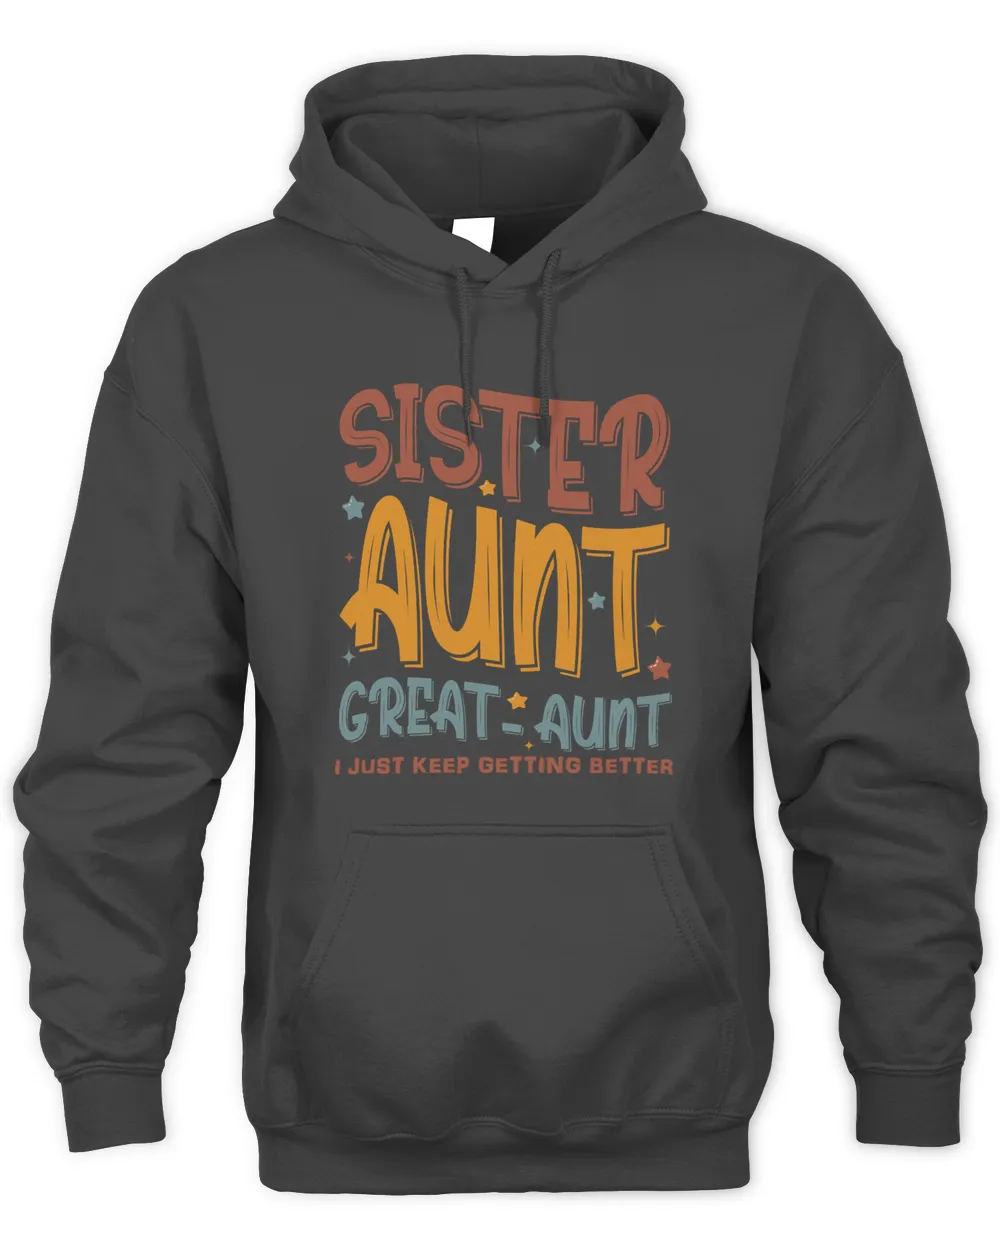 Sister Aunt Great-Aunt Sweatshirt, Hoodies, Tote Bag, Canvas